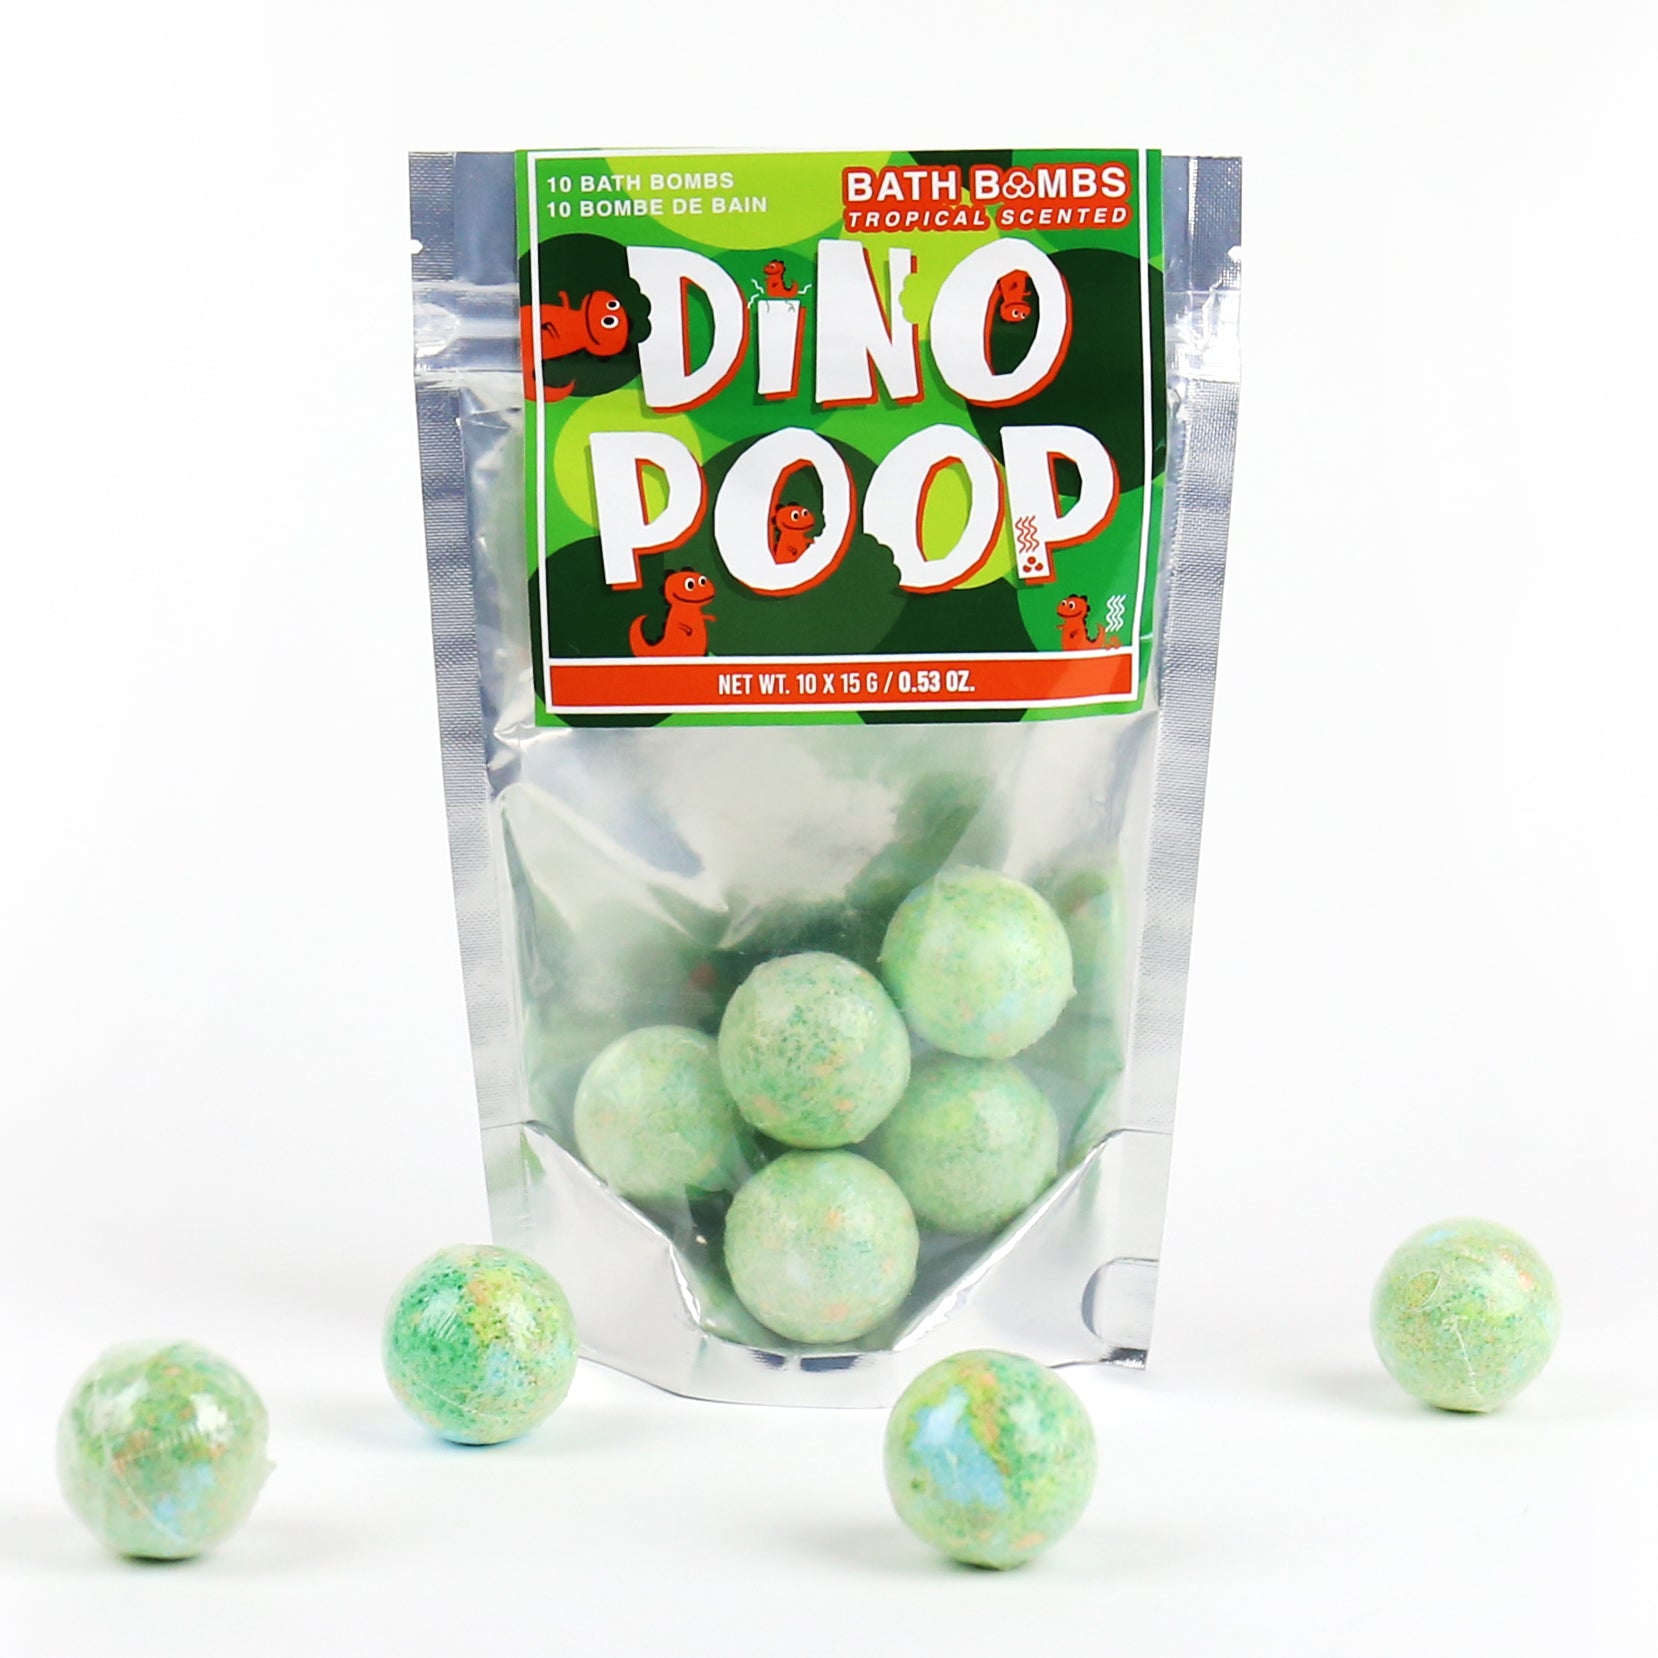 Dino Poop Bath Bombs (Pack of 6)